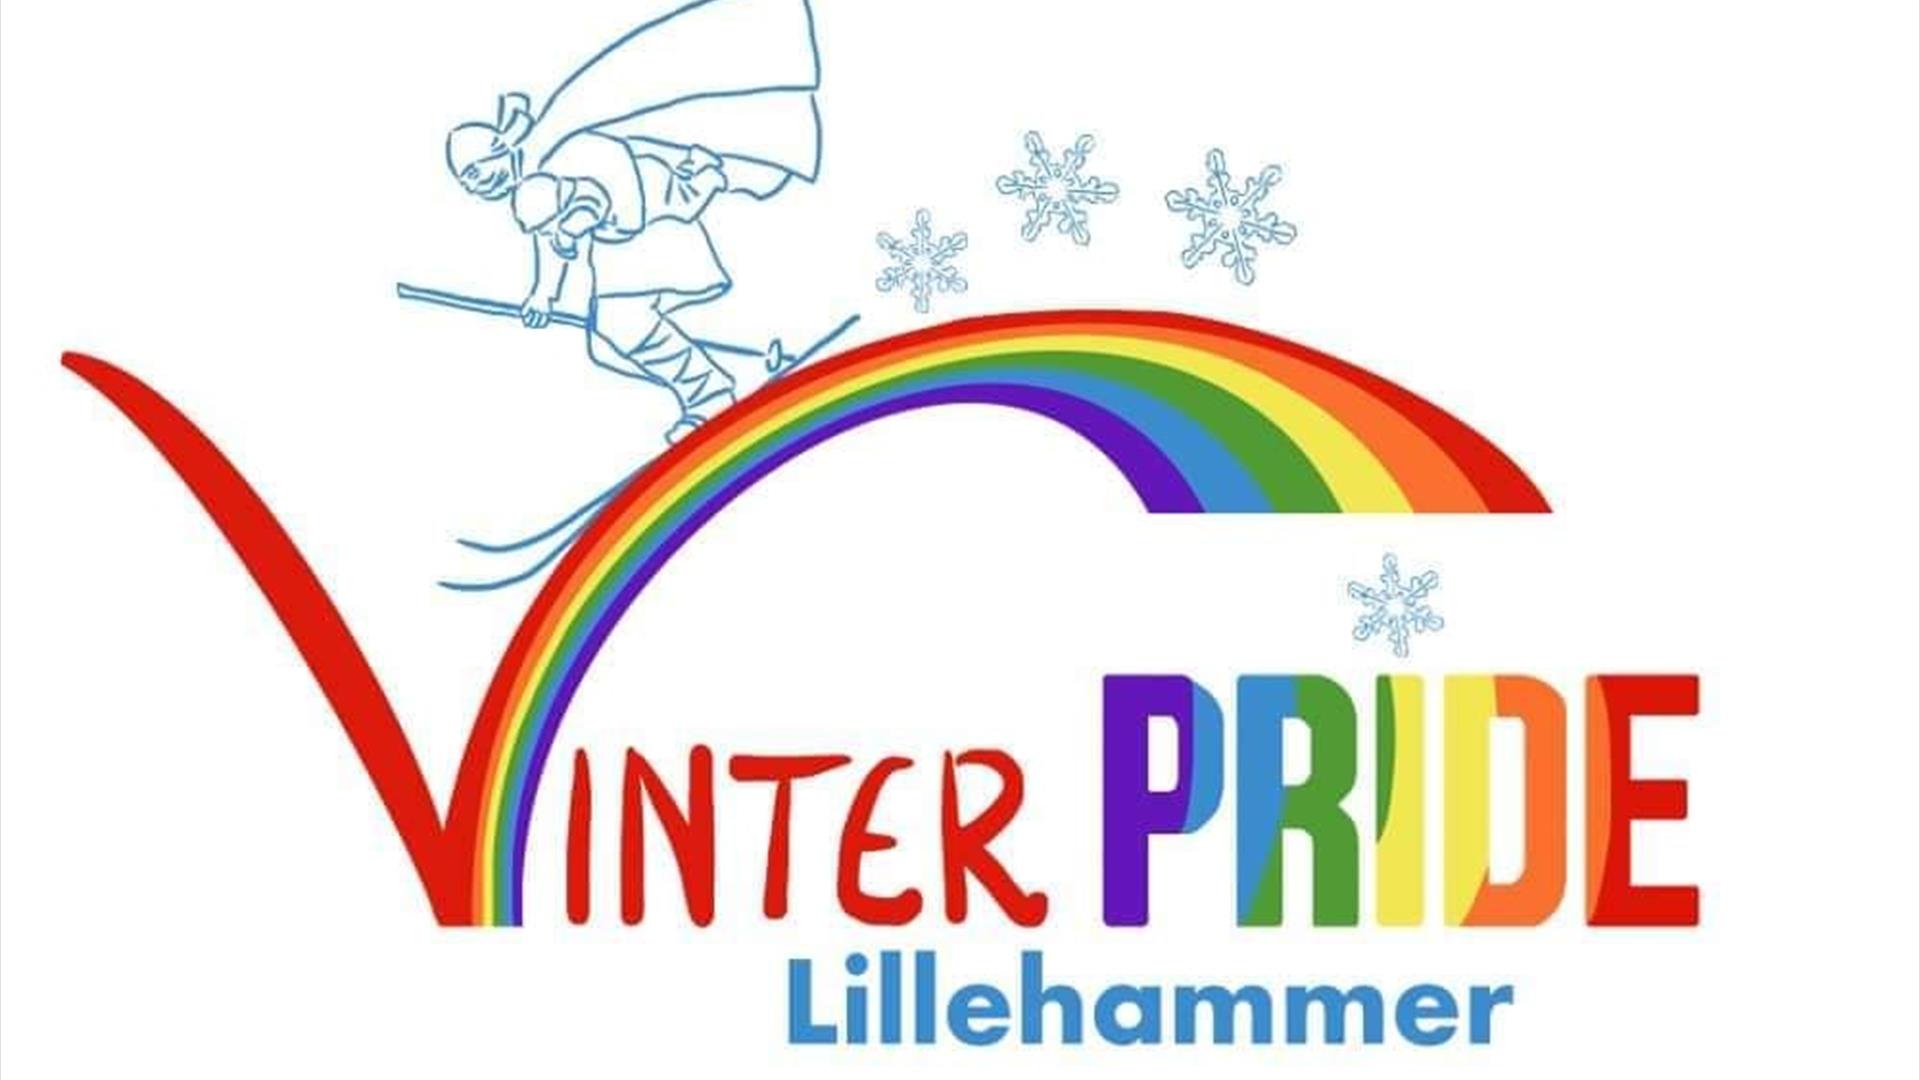 Vinterpride logo